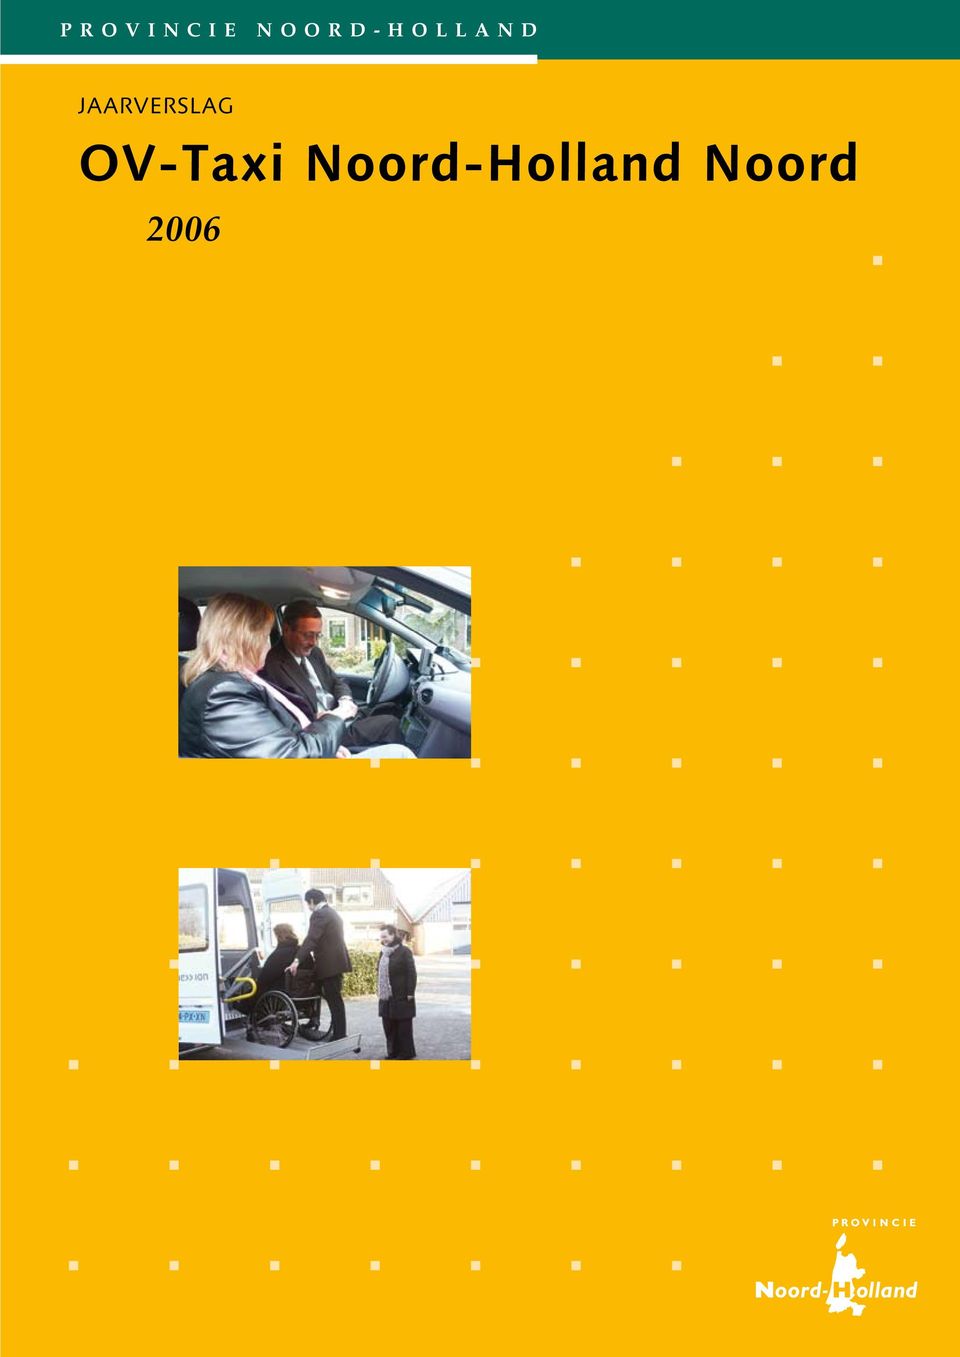 jaarverslag OV-Taxi